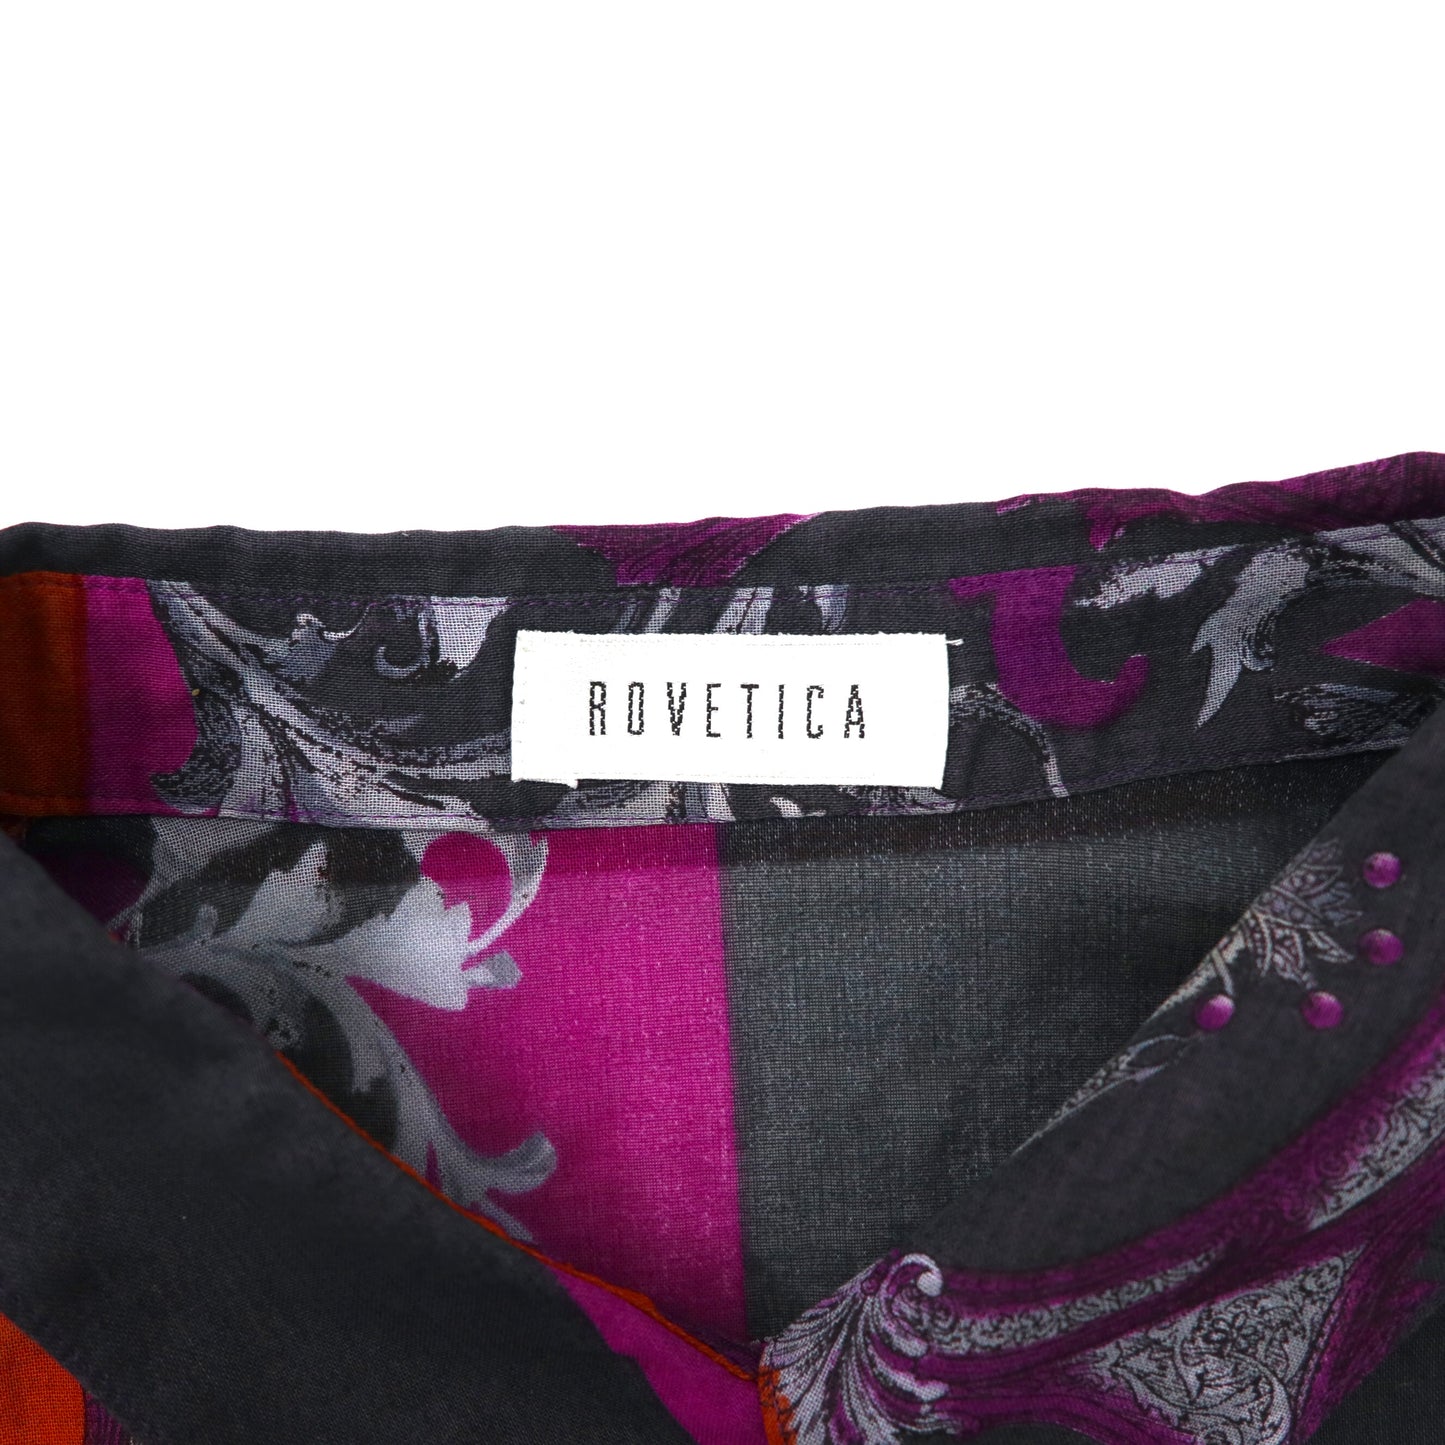 ROVETICA 半袖シースルーシャツ XL マルチカラー コットン 総柄 レトロ 日本製